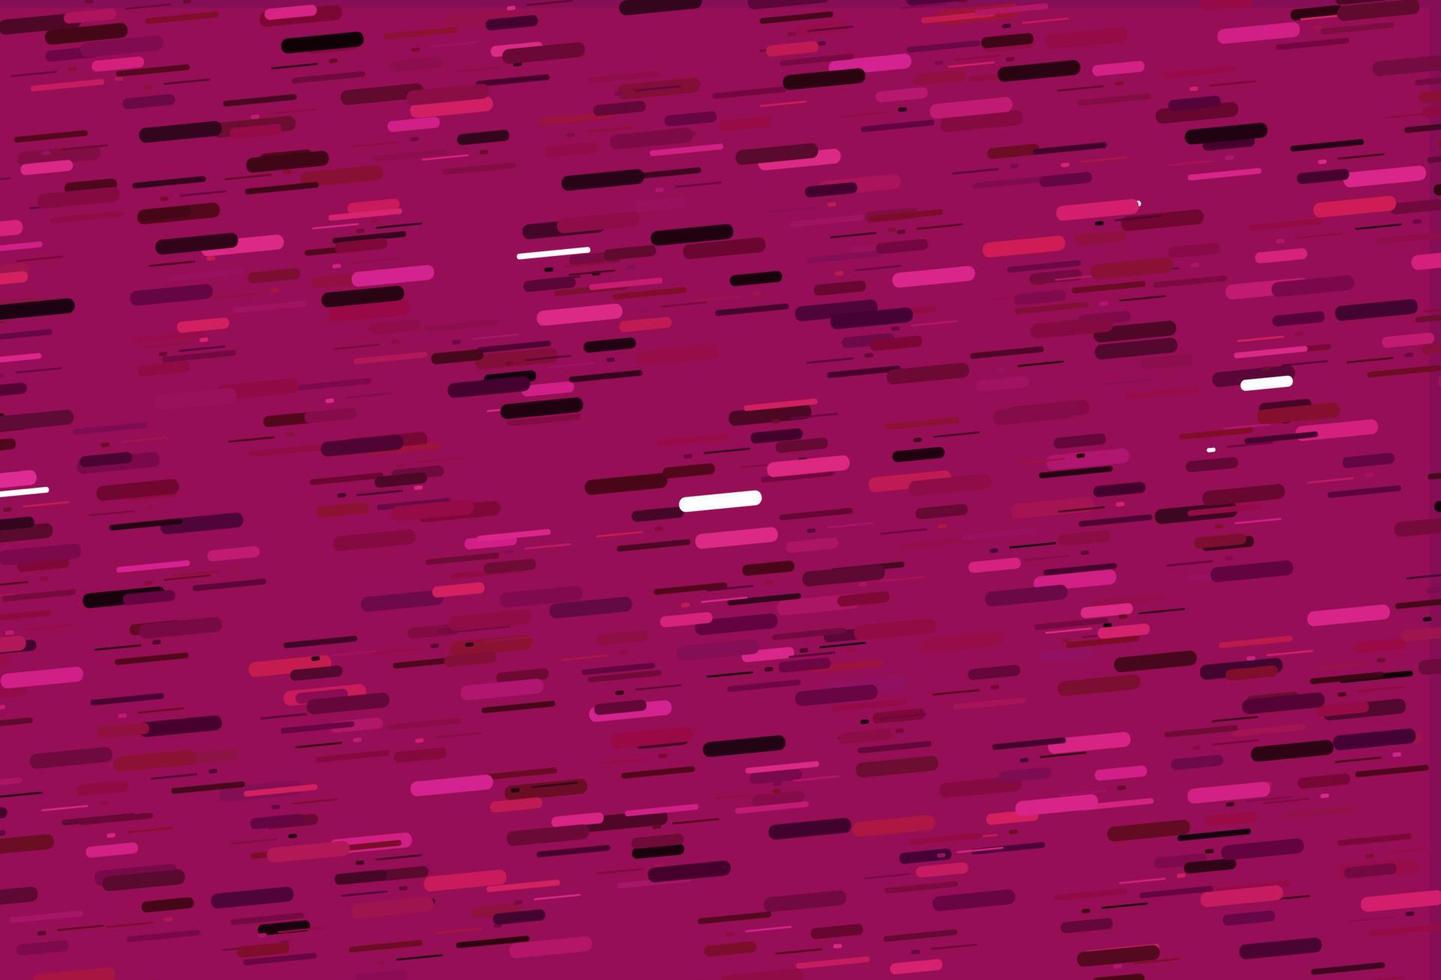 Telón de fondo de vector rosa claro con líneas largas.